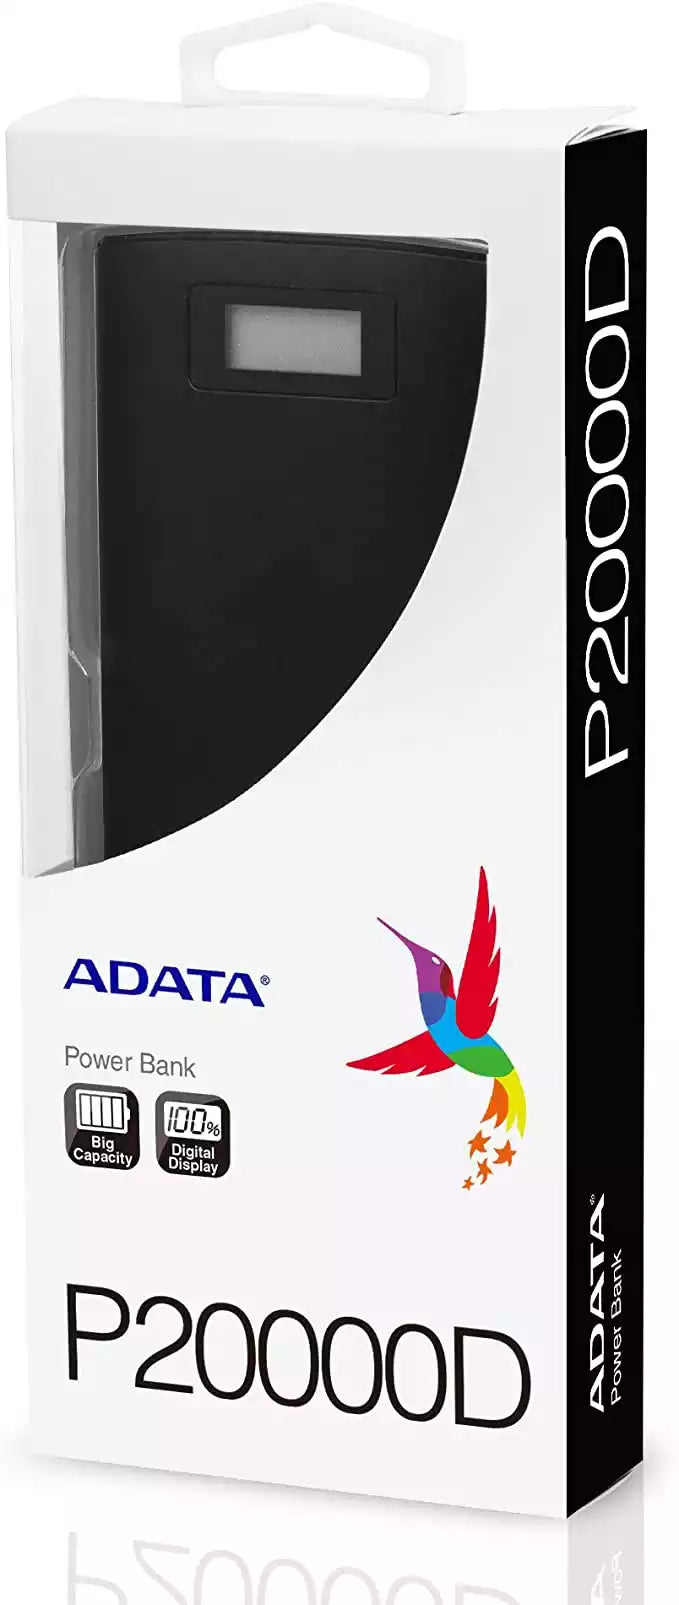 ADATA Powerbank Batería Portátil Color Negro 20000 mAh con Pantalla Digital (Modelo P20000D)